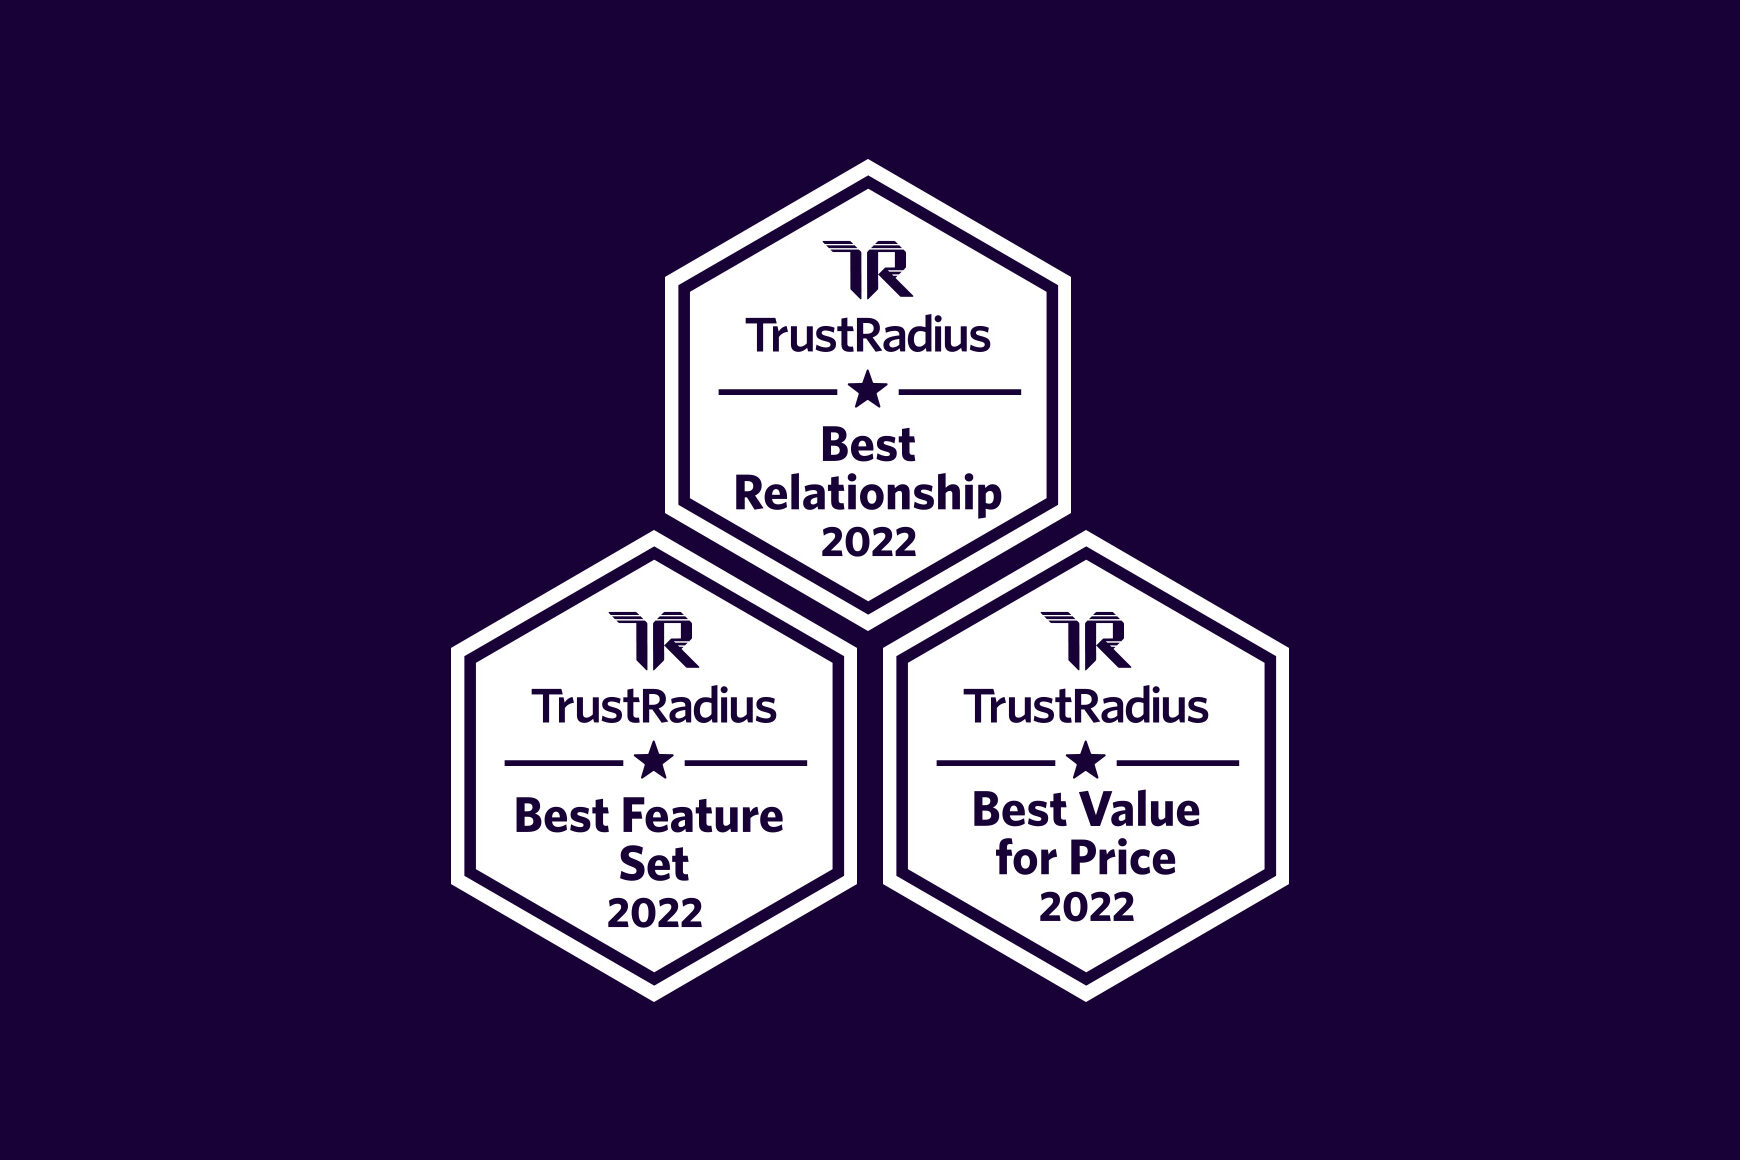 Talkdesk wins three 2022 Best Of Awards from TrustRadius